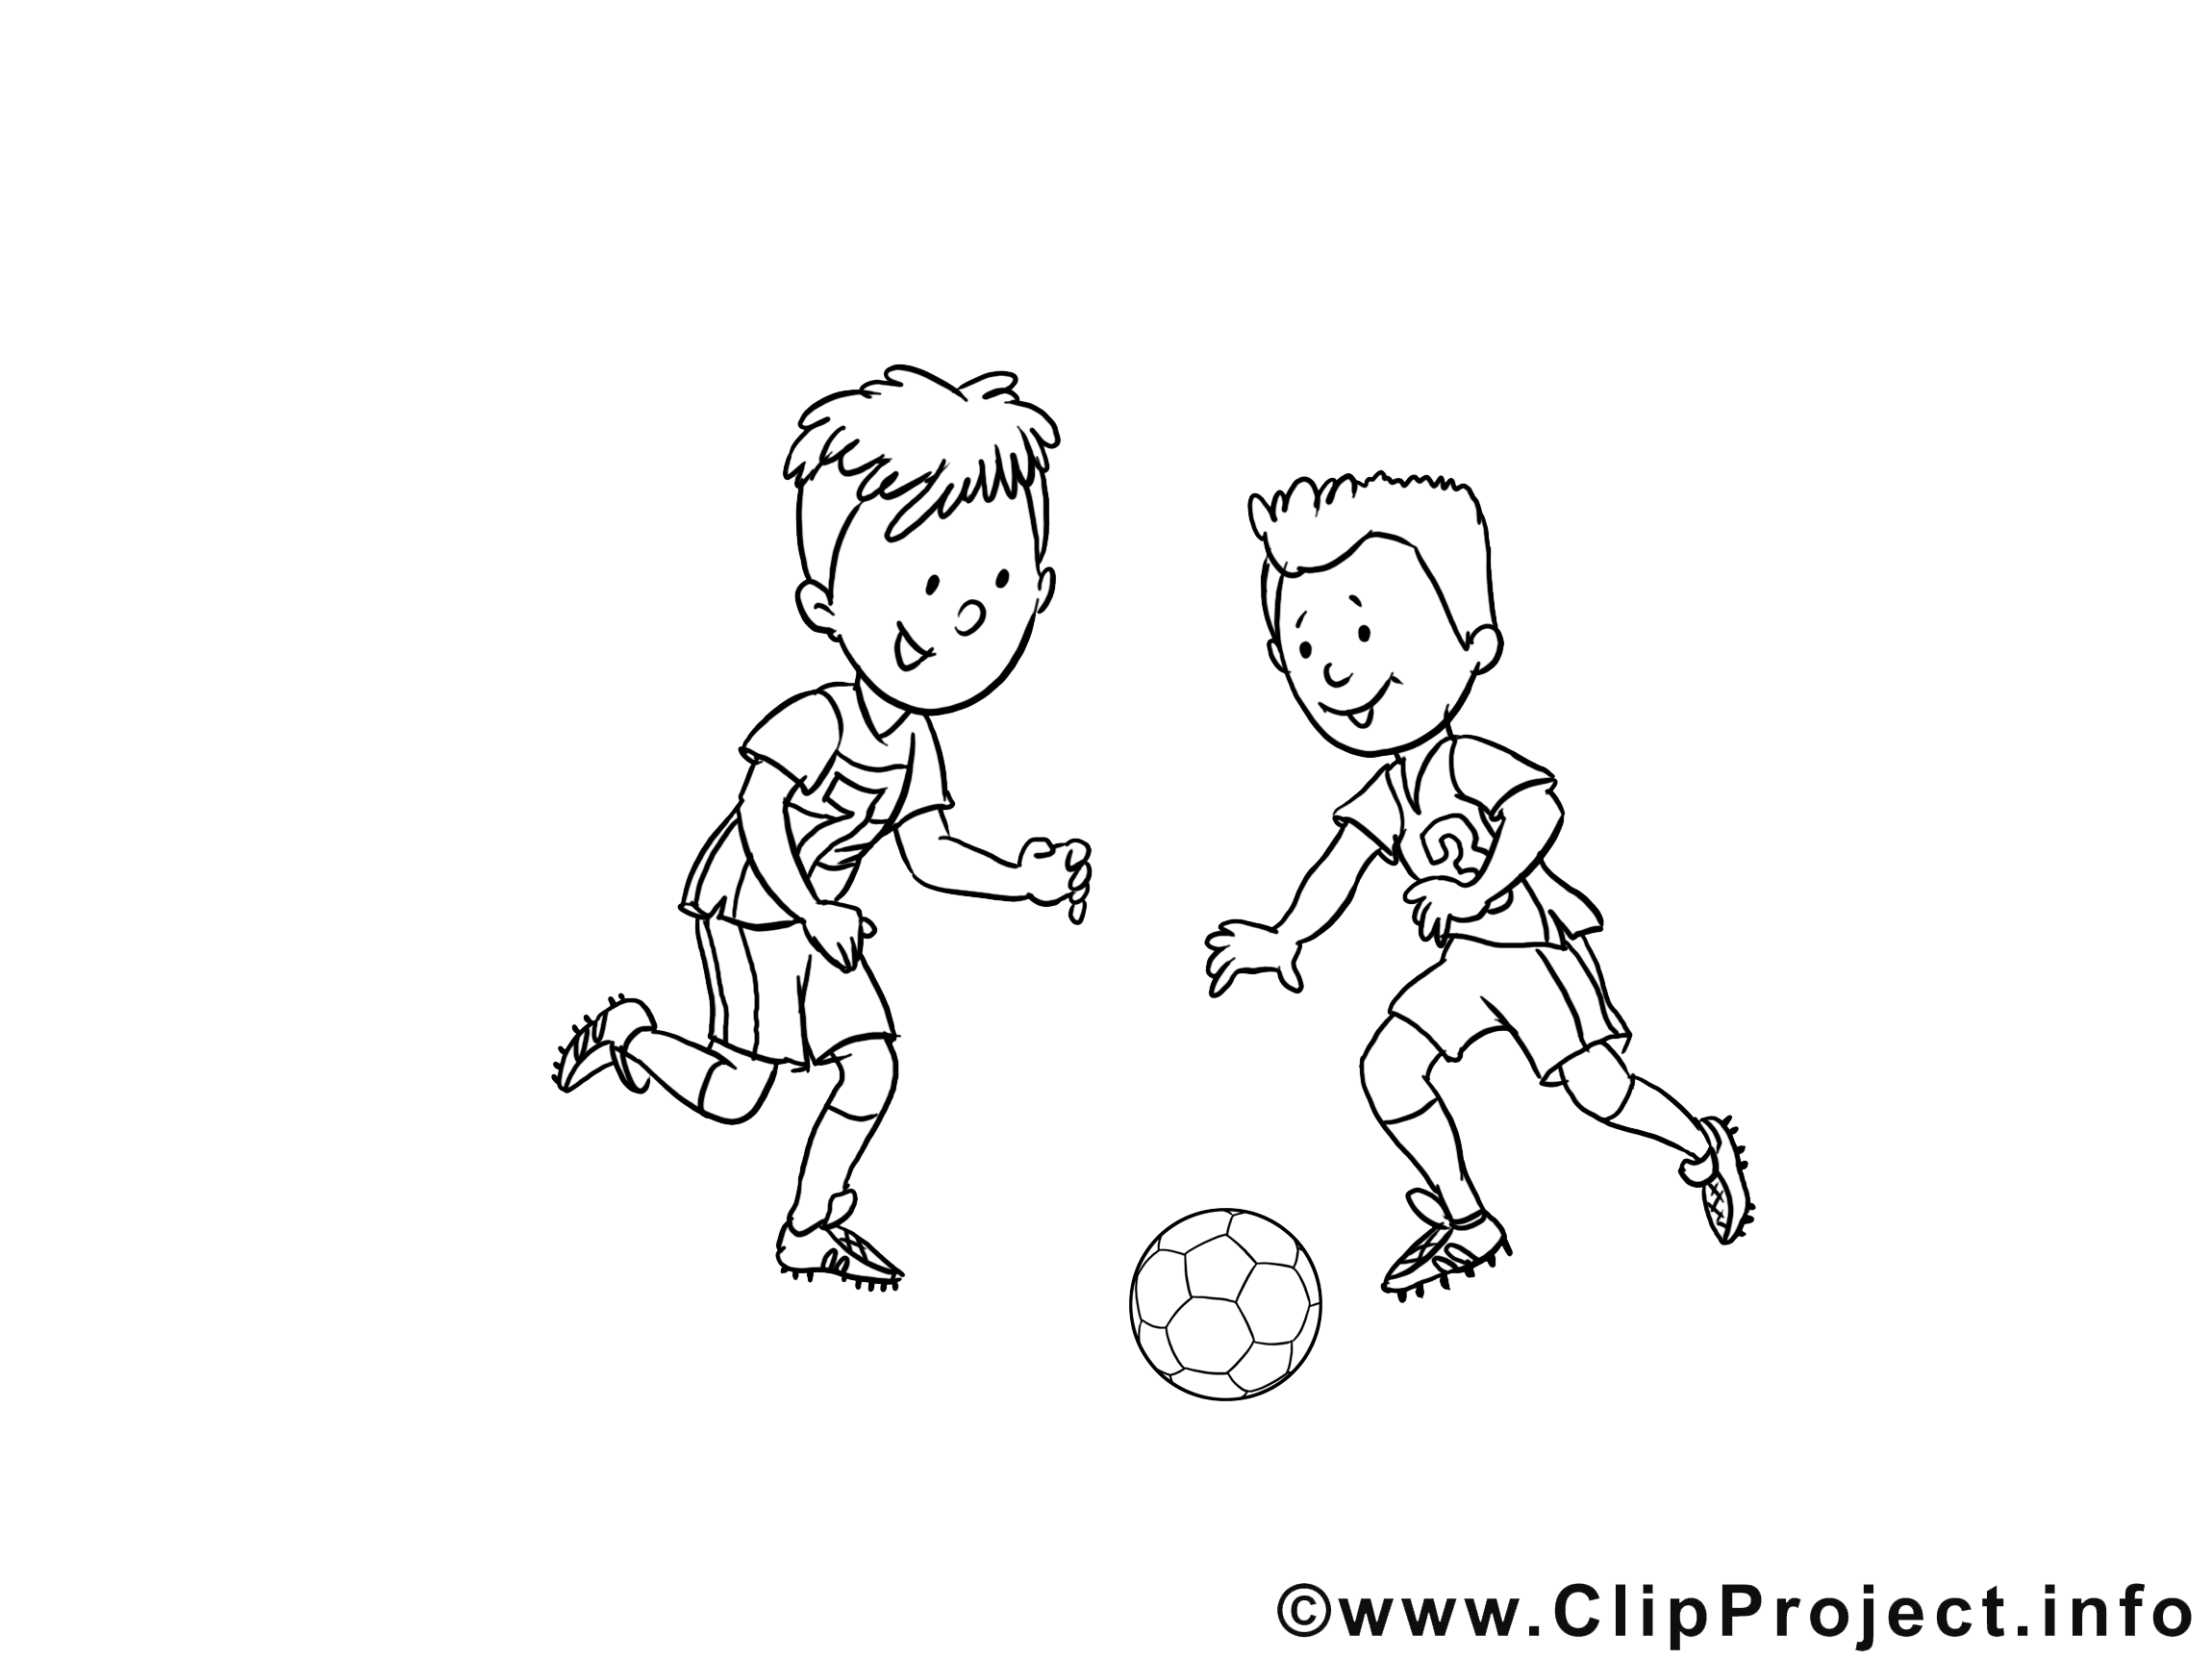 Football image à colorier gratuite